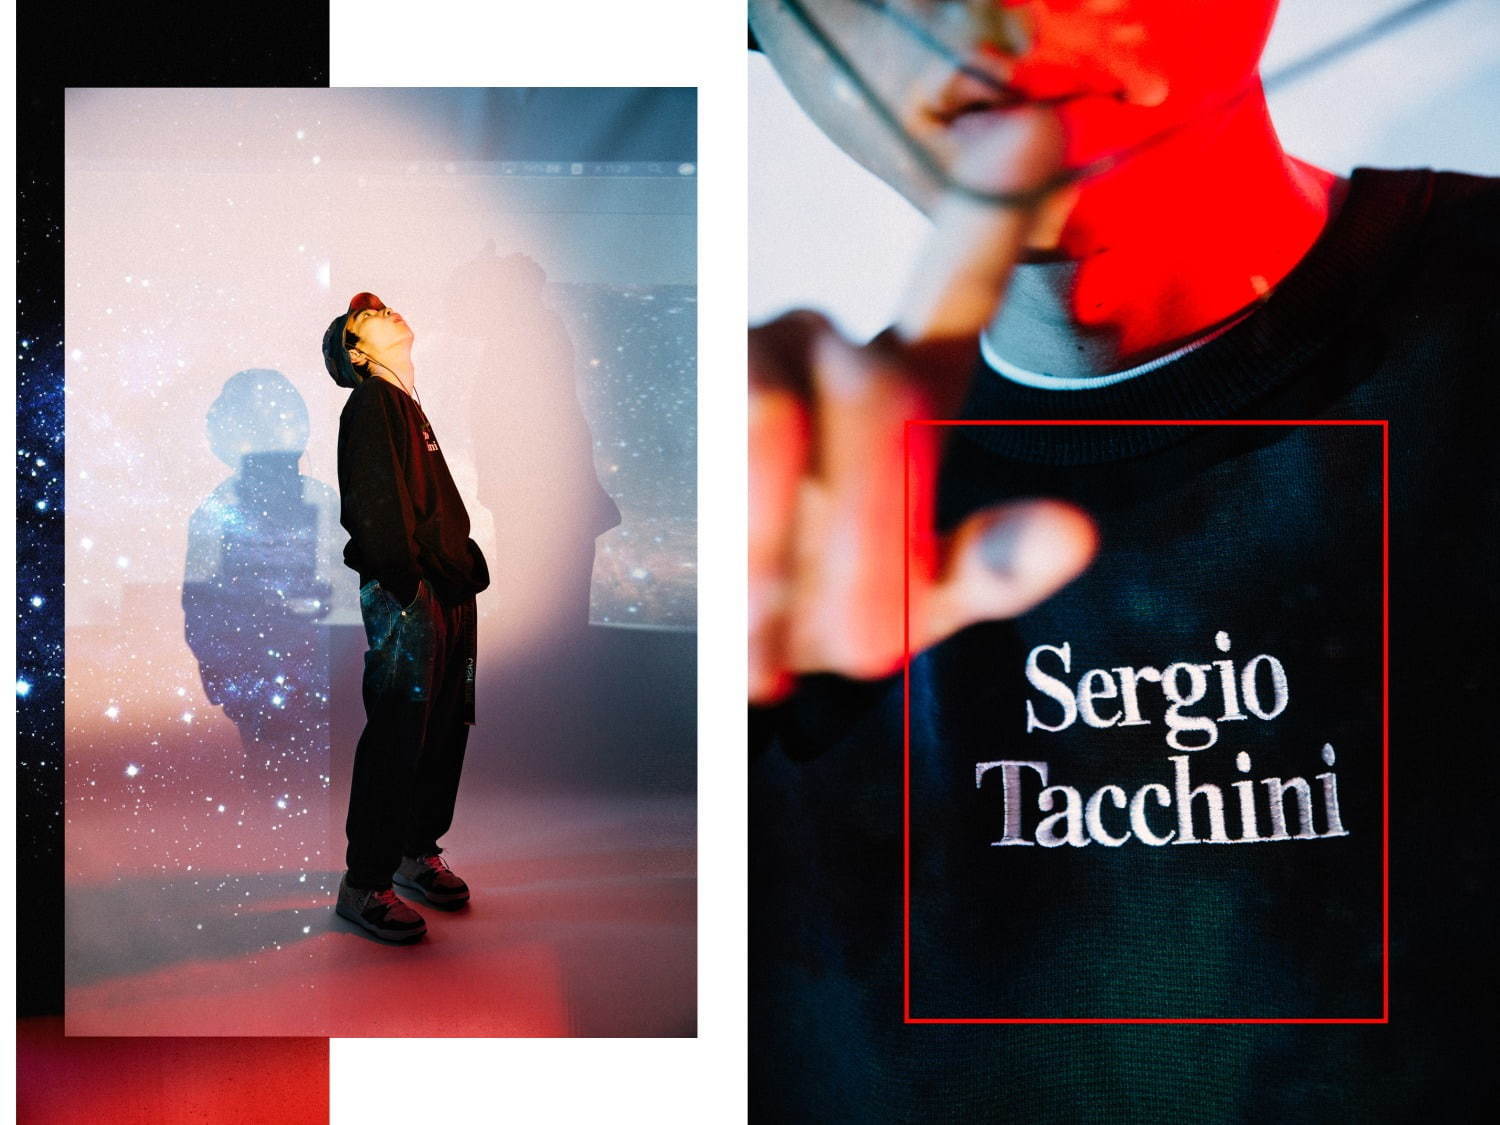 セルジオ タッキーニ(SERGIO TACCHINI) 2019-20年秋冬メンズコレクション  - 写真1